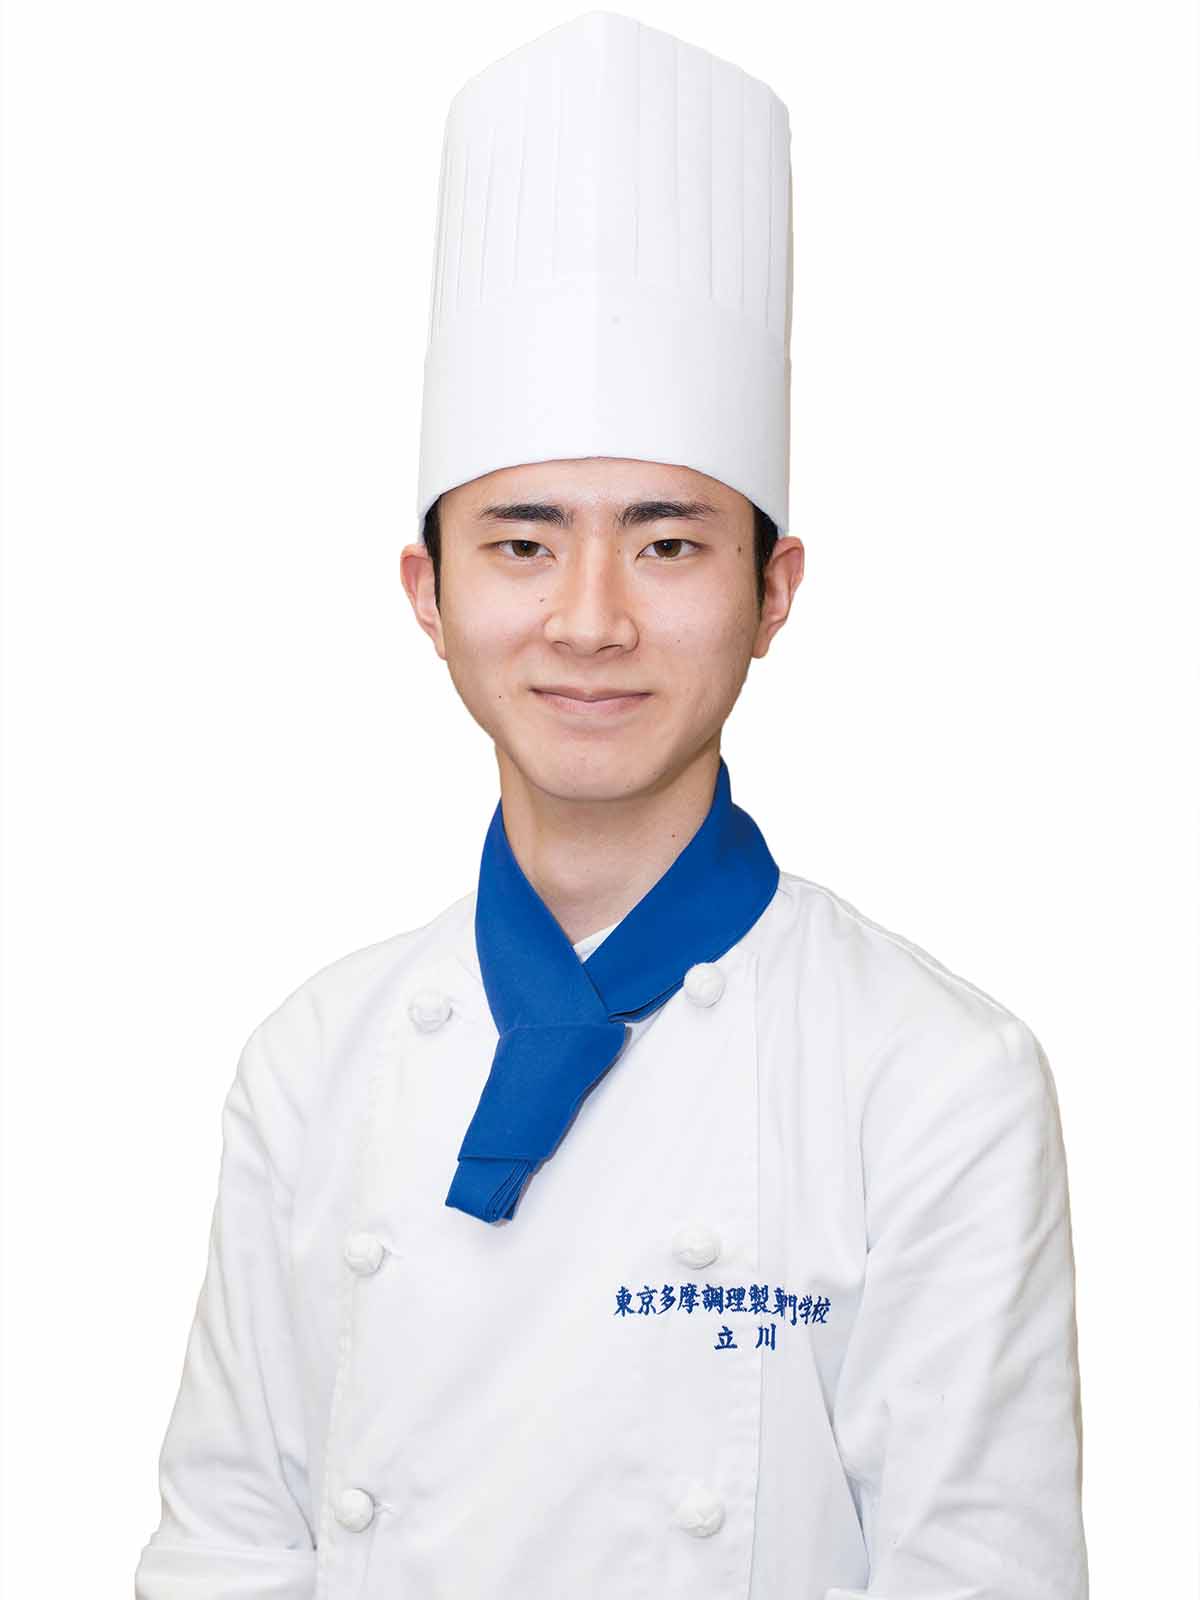 在校生インタビュー 東京多摩調理製菓専門学校 12種の資格取得と充実の就職先